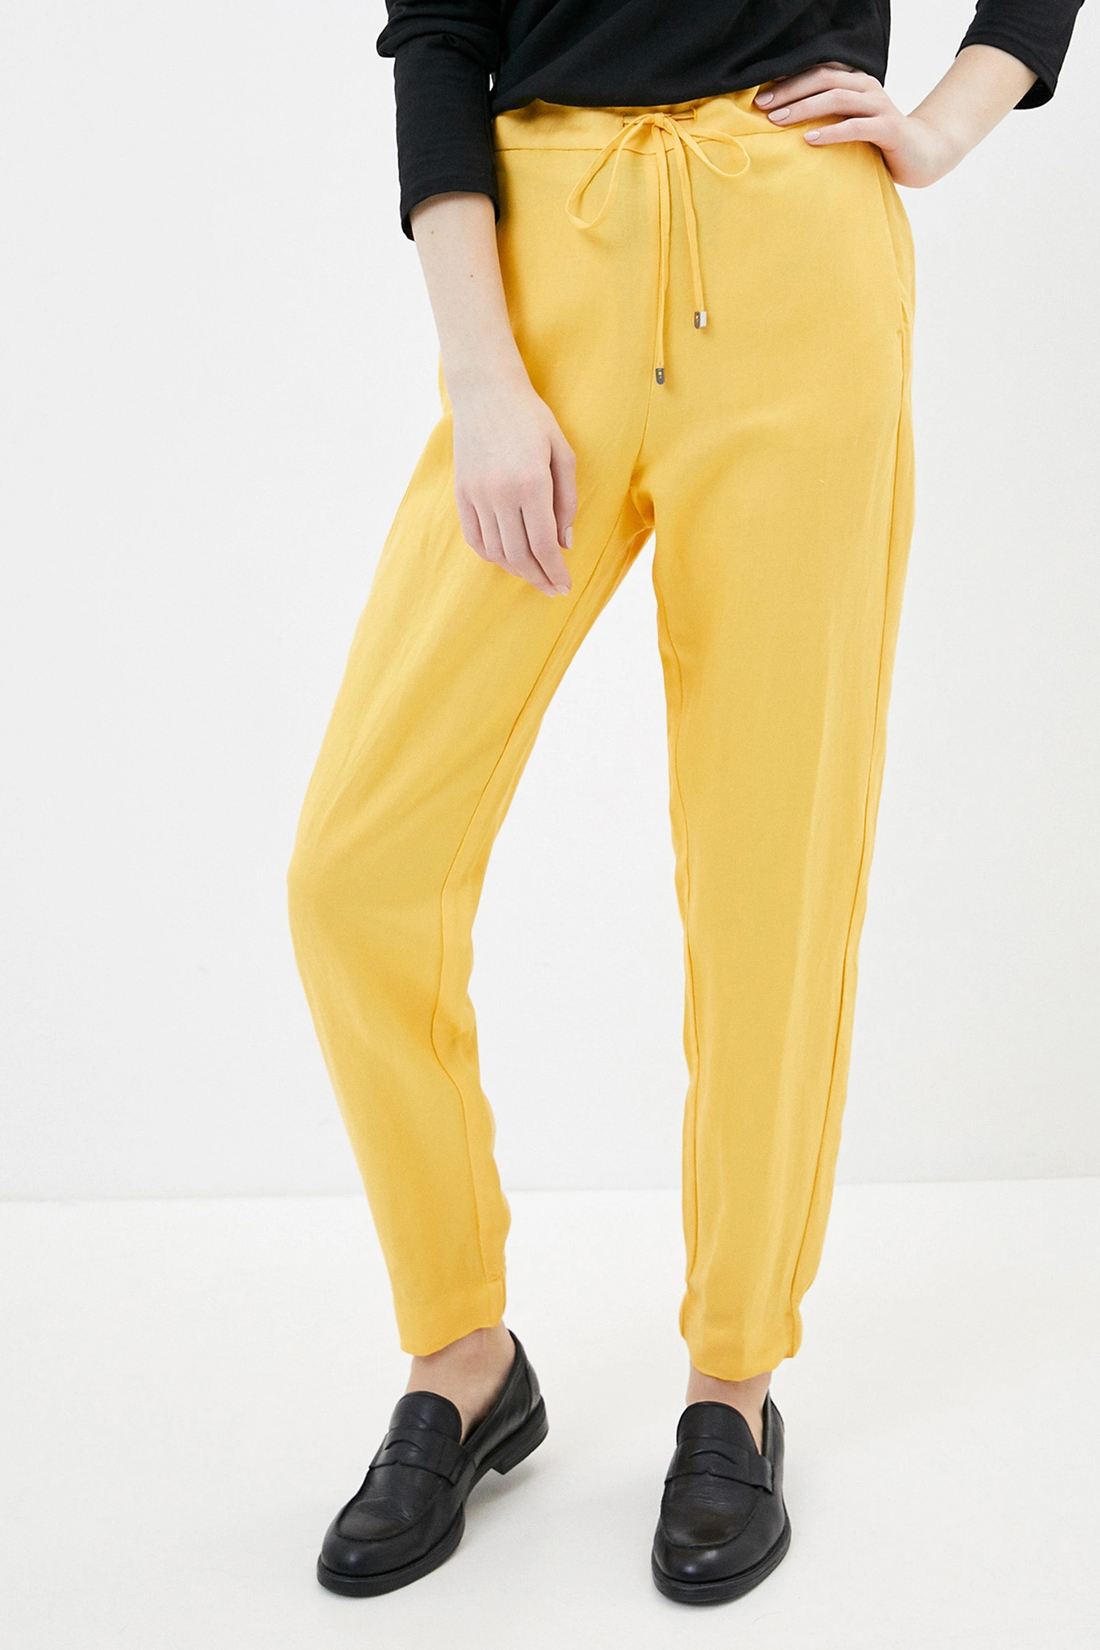 Спортивные брюки женские Baon B290048 желтые XS